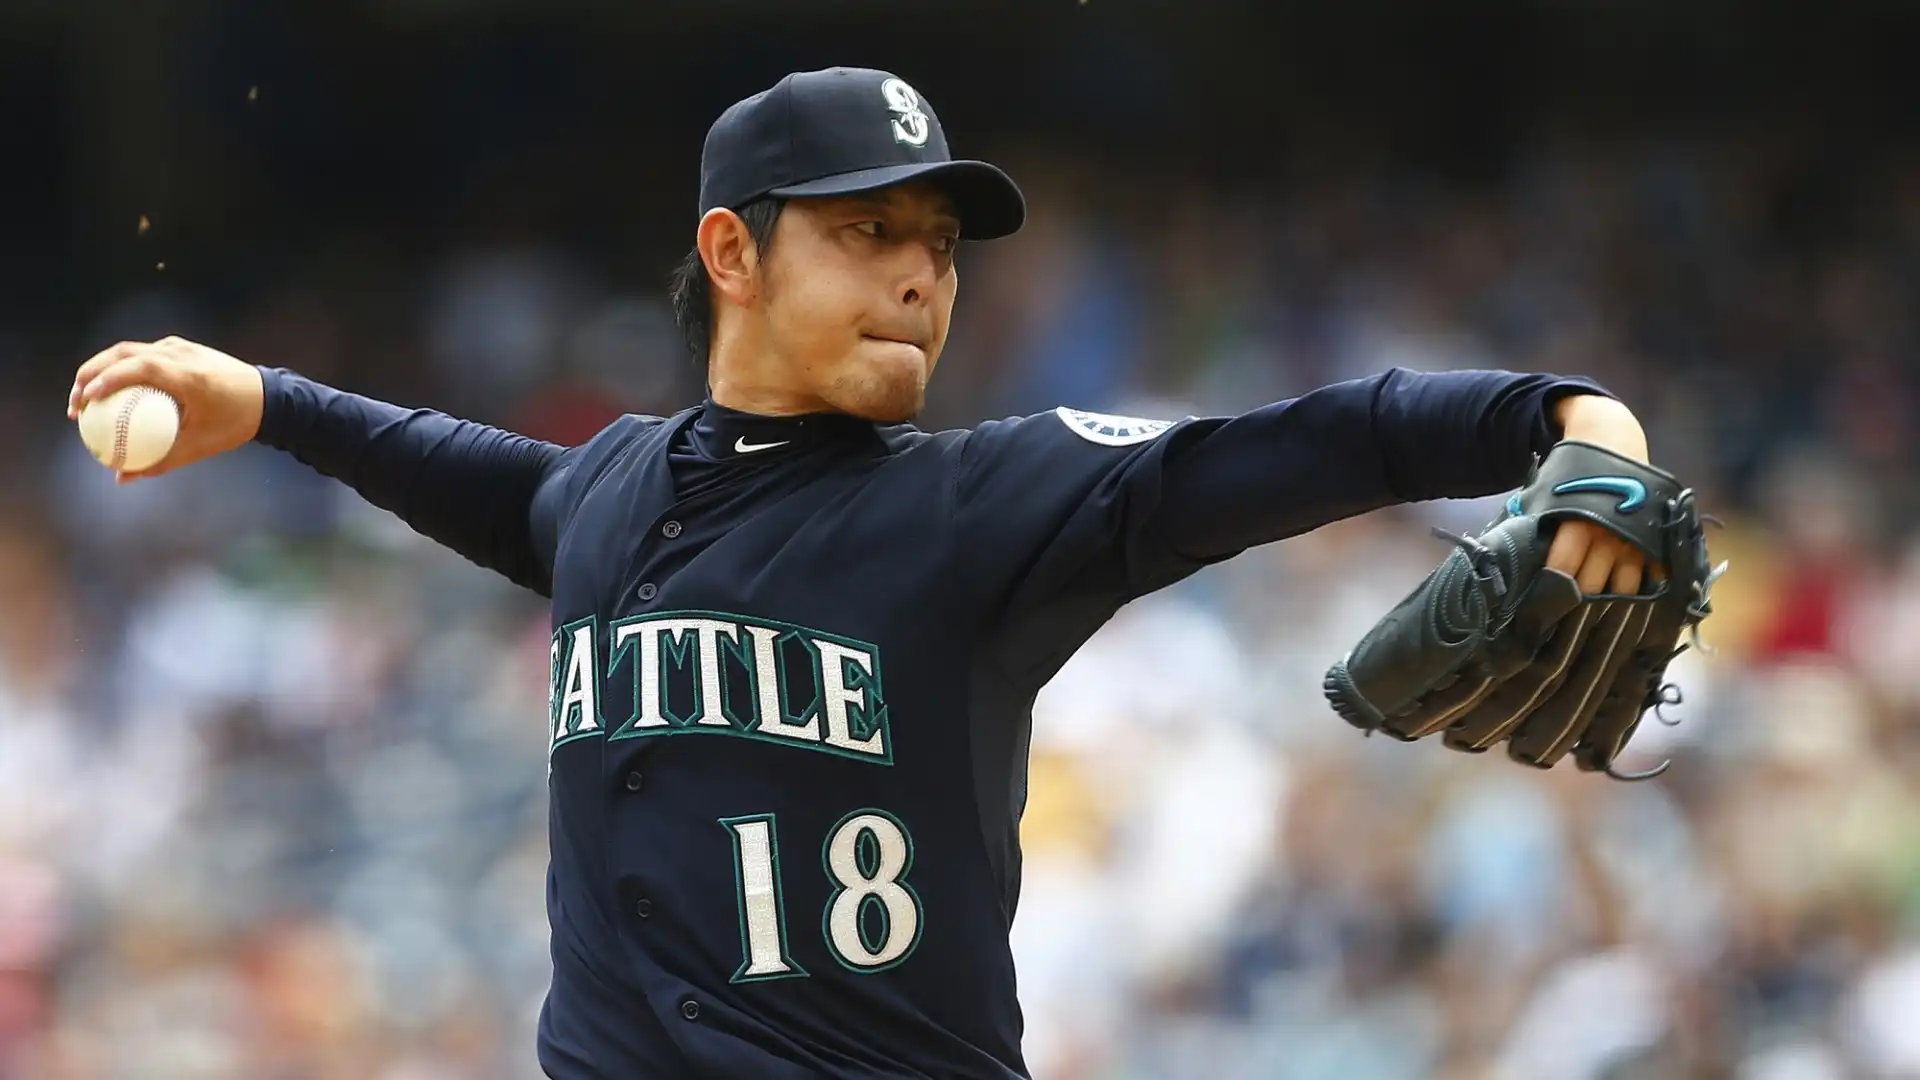 Hisashi Iwakuma (Baseball): patrimonio netto stimato 7 milioni di dollari. MLB All-Star nel 2013